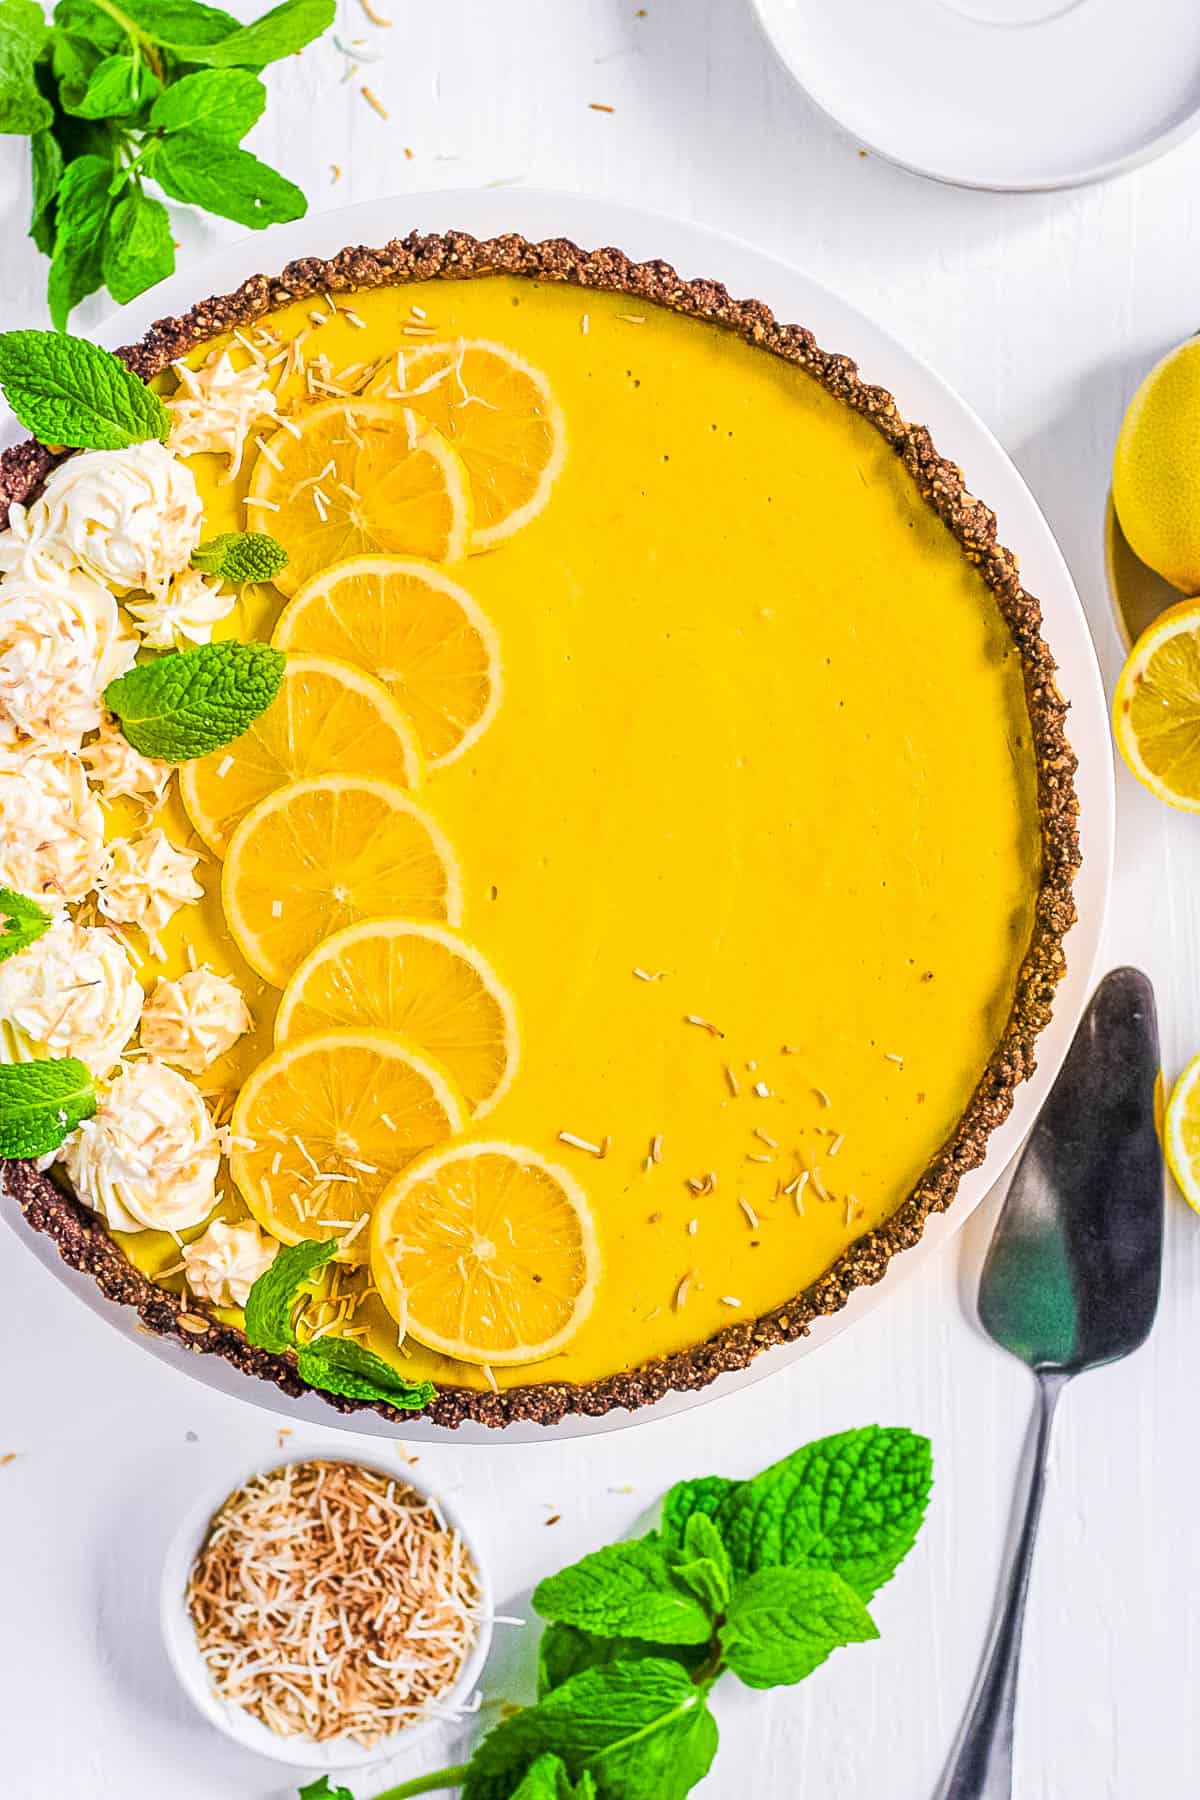 easy, healthy, gluten free vegan lemon tart recipe on a white plate